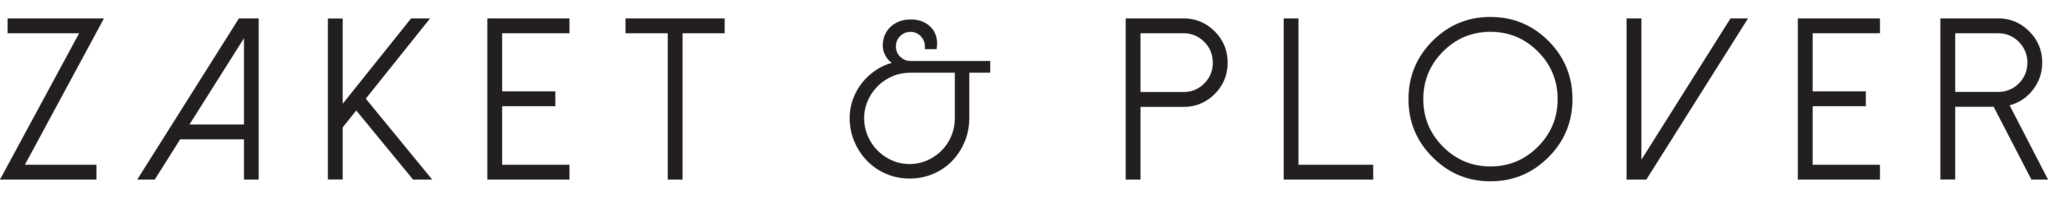 Zaket & Plover Logo